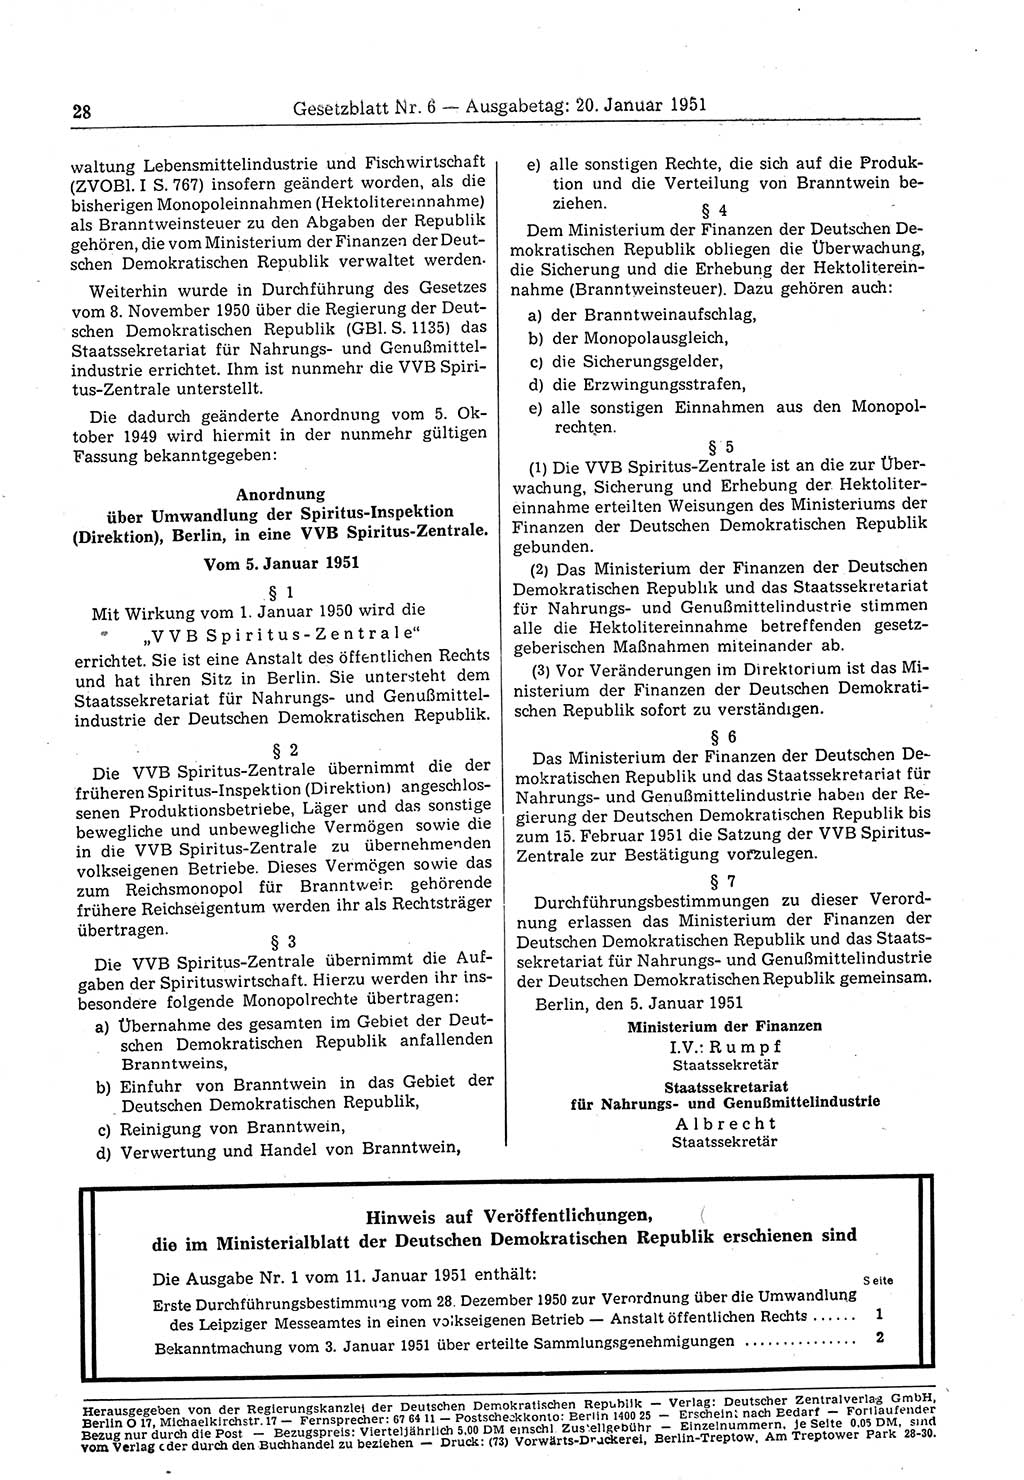 Gesetzblatt (GBl.) der Deutschen Demokratischen Republik (DDR) 1951, Seite 28 (GBl. DDR 1951, S. 28)